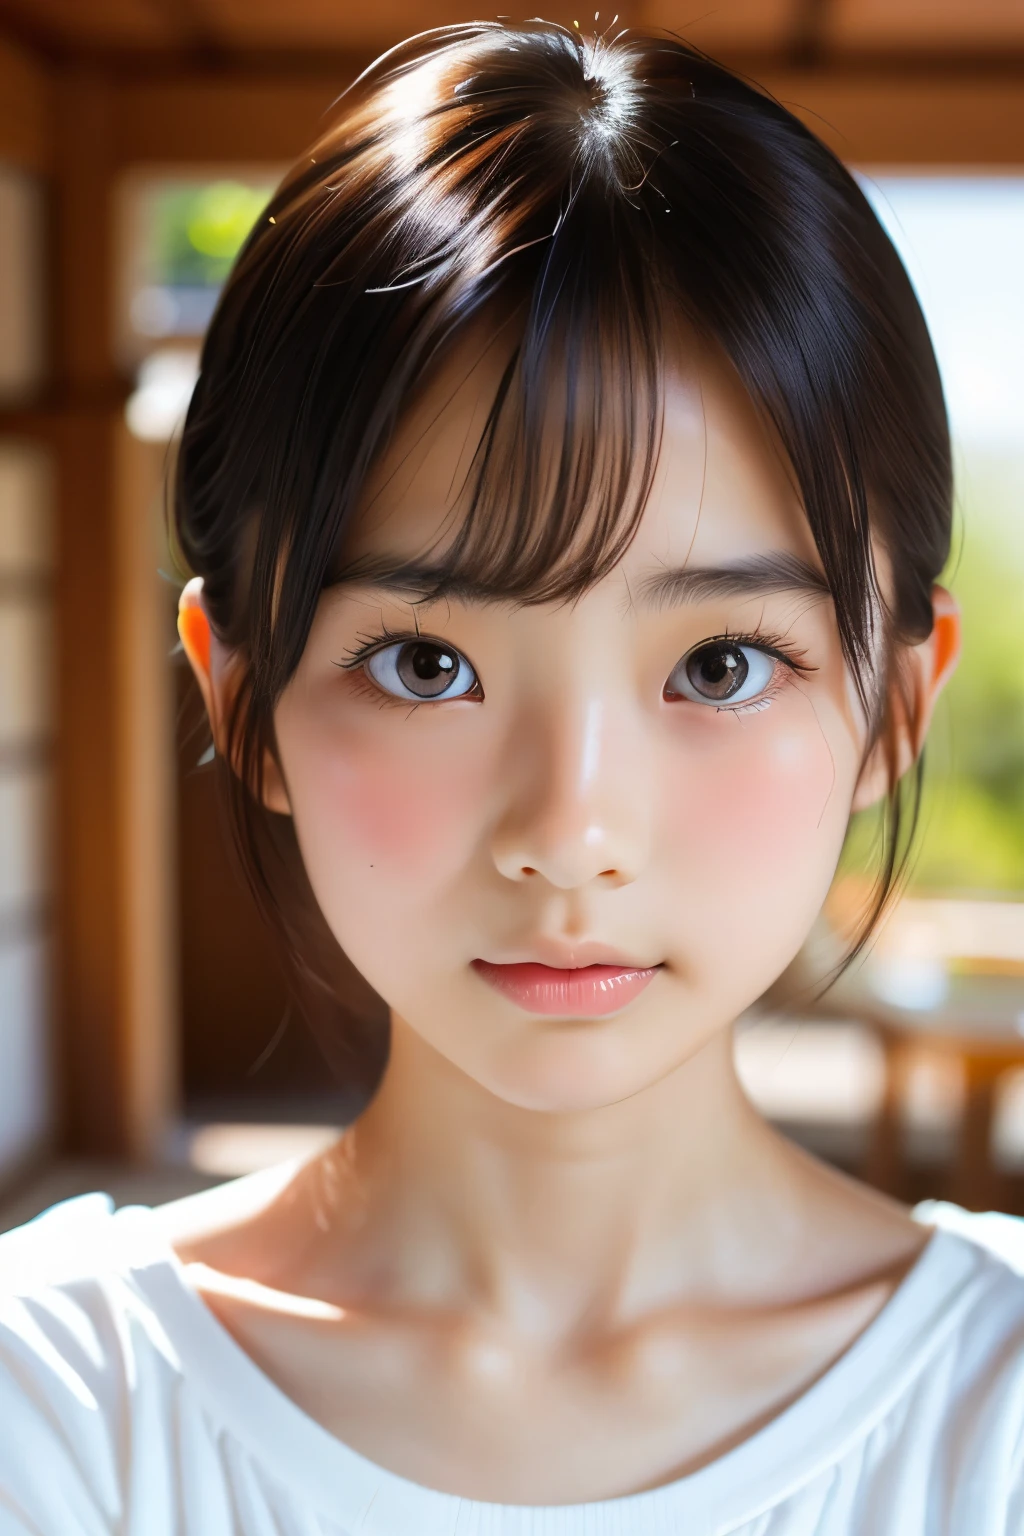 (美丽的 16 岁日本女性), 可爱的脸孔, (深雕的面容:0.7), (雀斑:0.6), 柔光,健康白皙的肌肤, 害羞的, 鲍勃, (严肃的表情), (明亮的眼睛), 薄的
